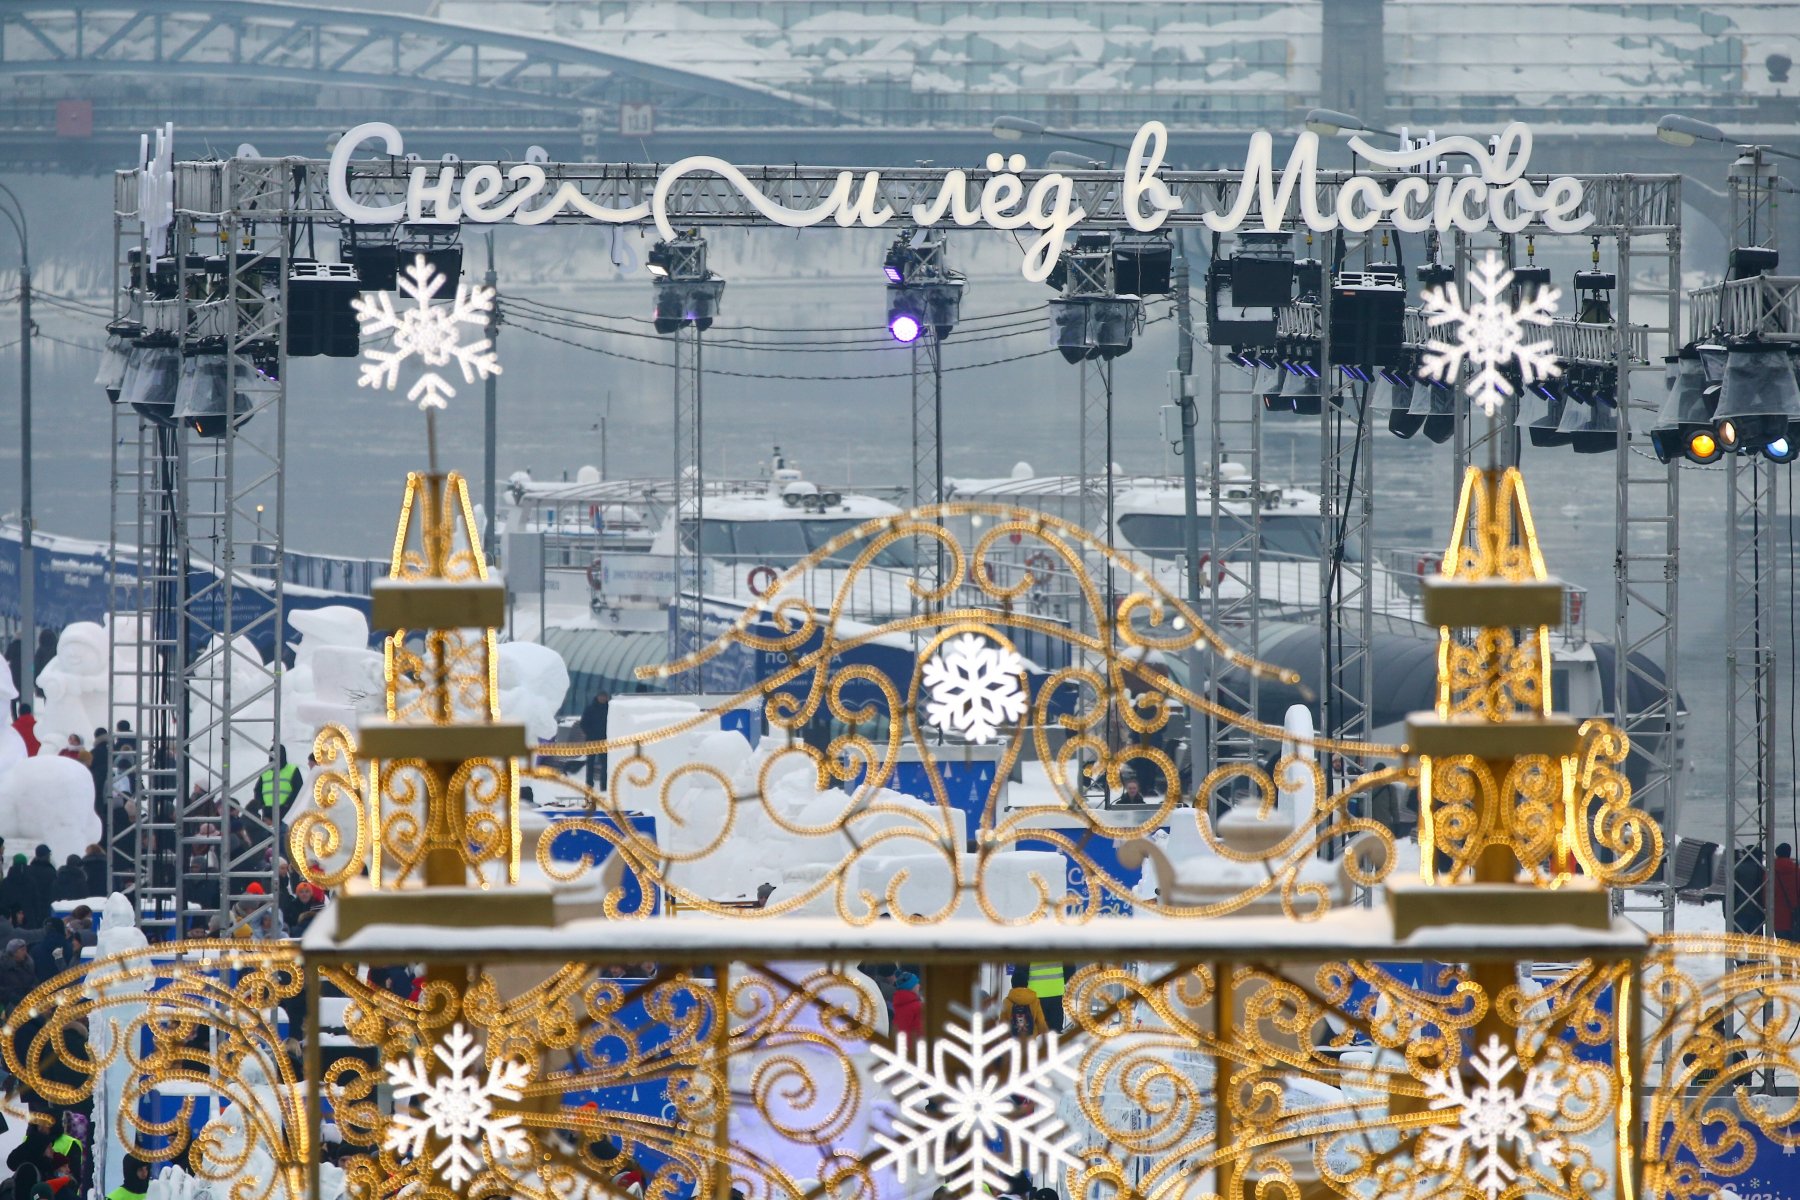 Международный фестиваль «Снег и лед в Москве» в Парке Горького завершается в предстоящие выходные